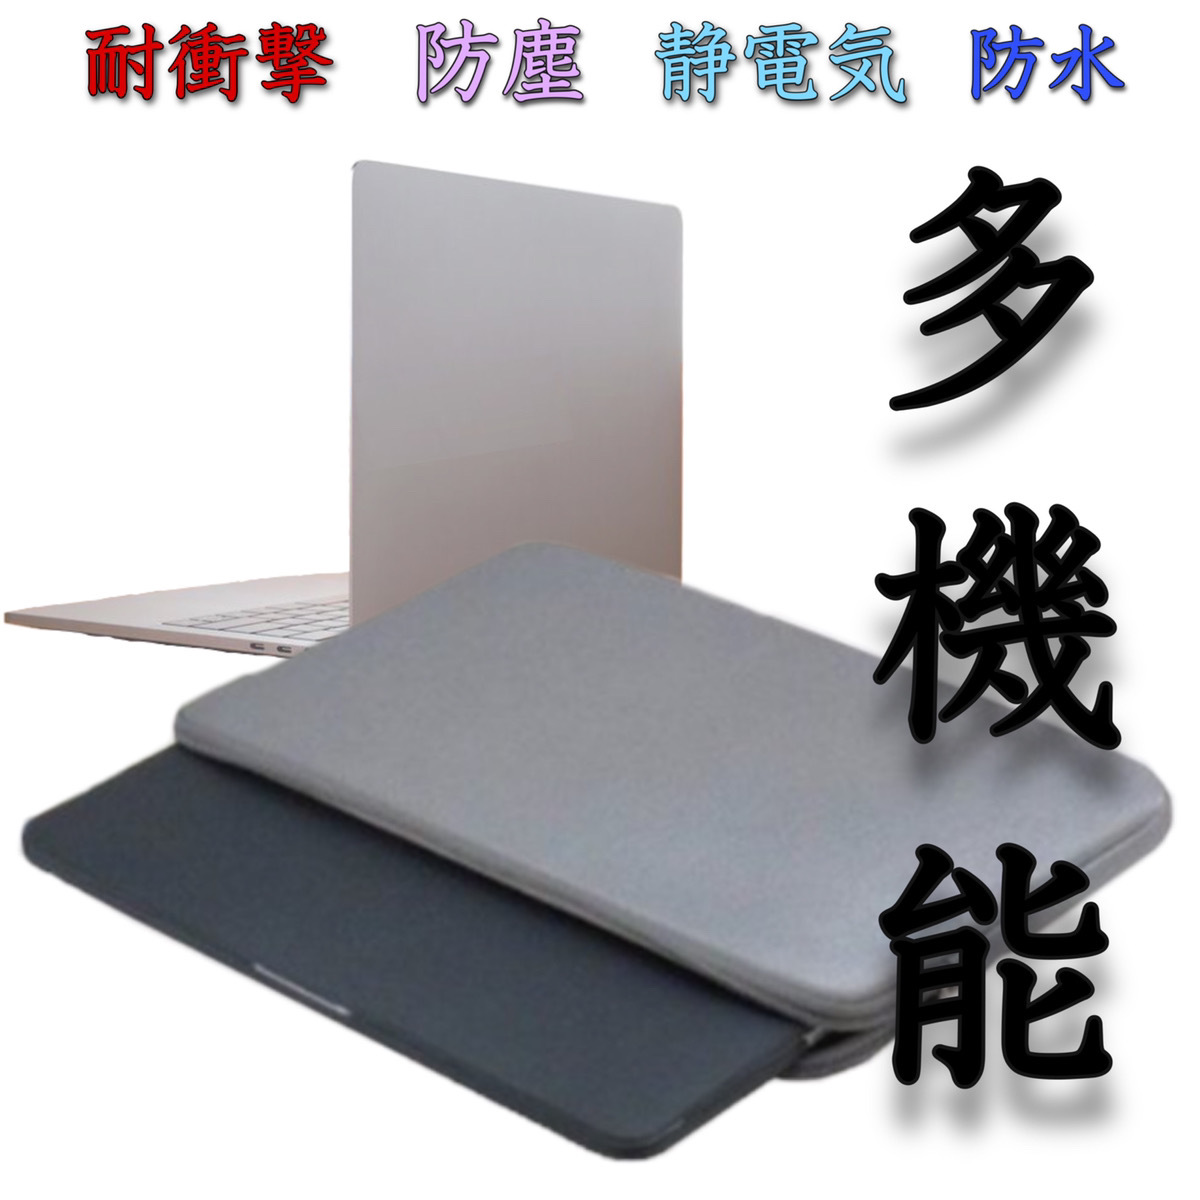  планшет кейс 11 дюймовый ноутбук кейс ipad модный легкий водонепроницаемый покрытие Note PC сумка Note PC кейс 